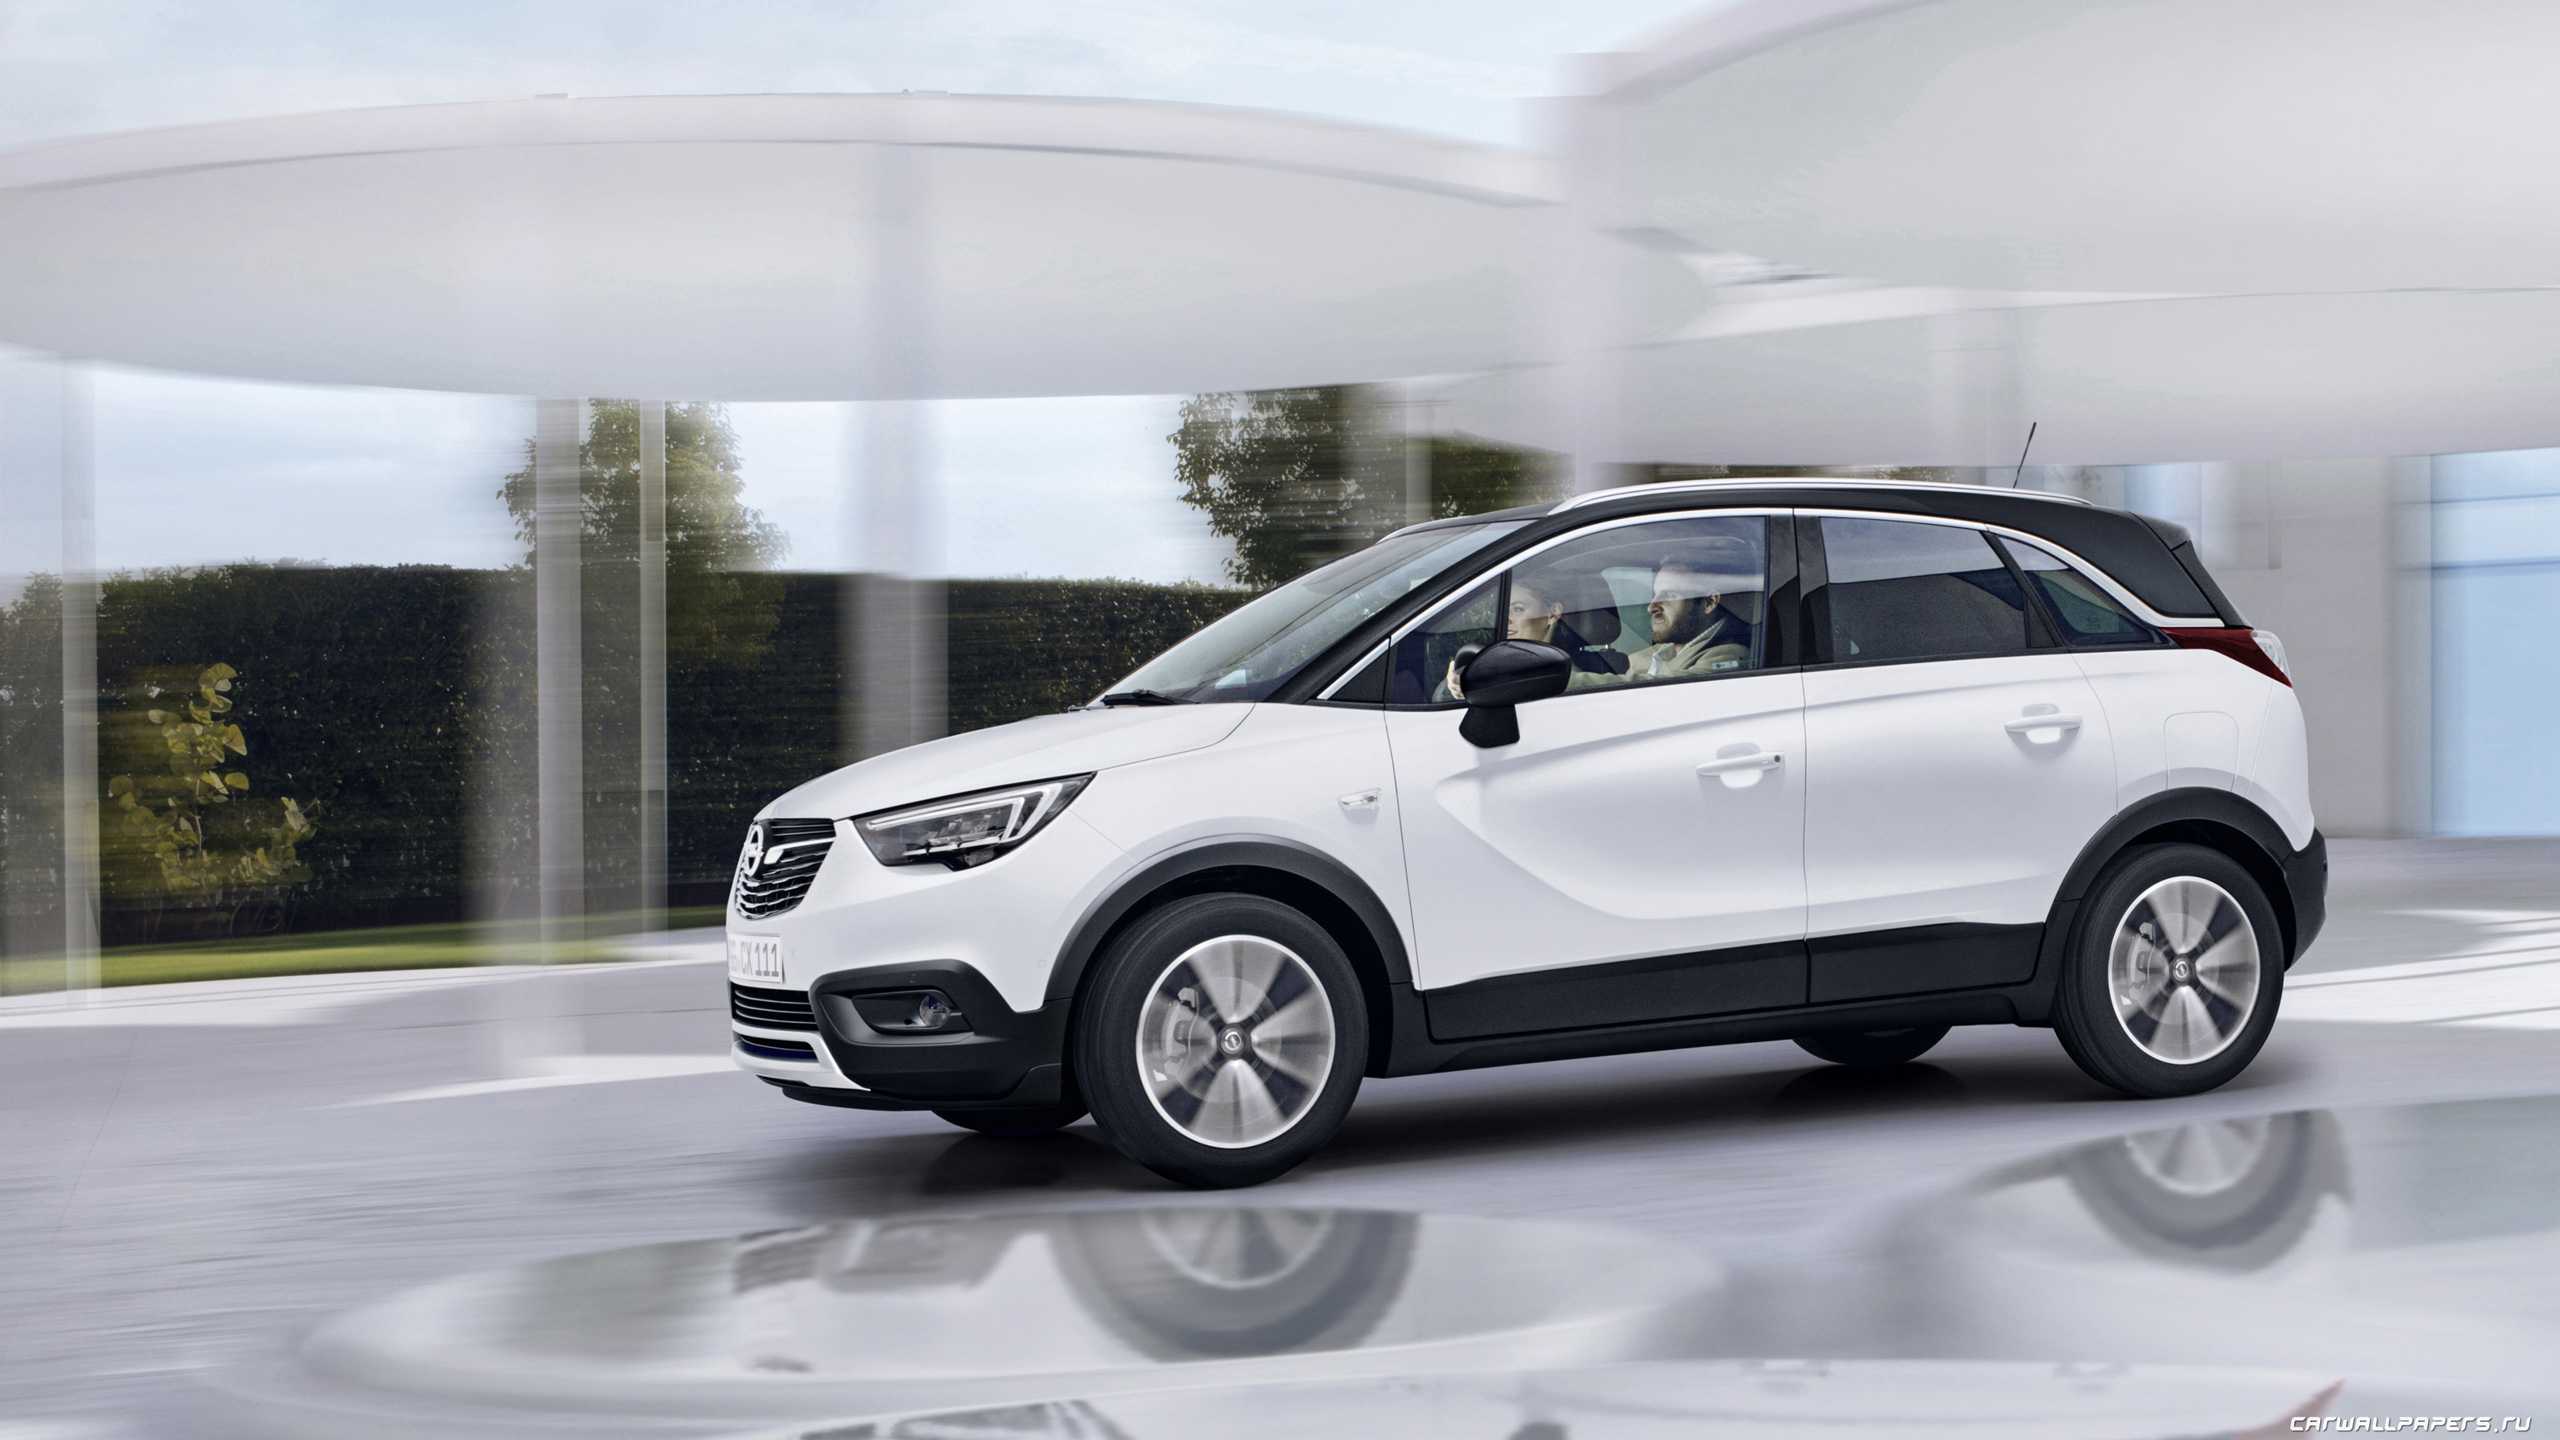 Opel crossland x - обзор, цены, видео, технические характеристики опель кроссленд икс